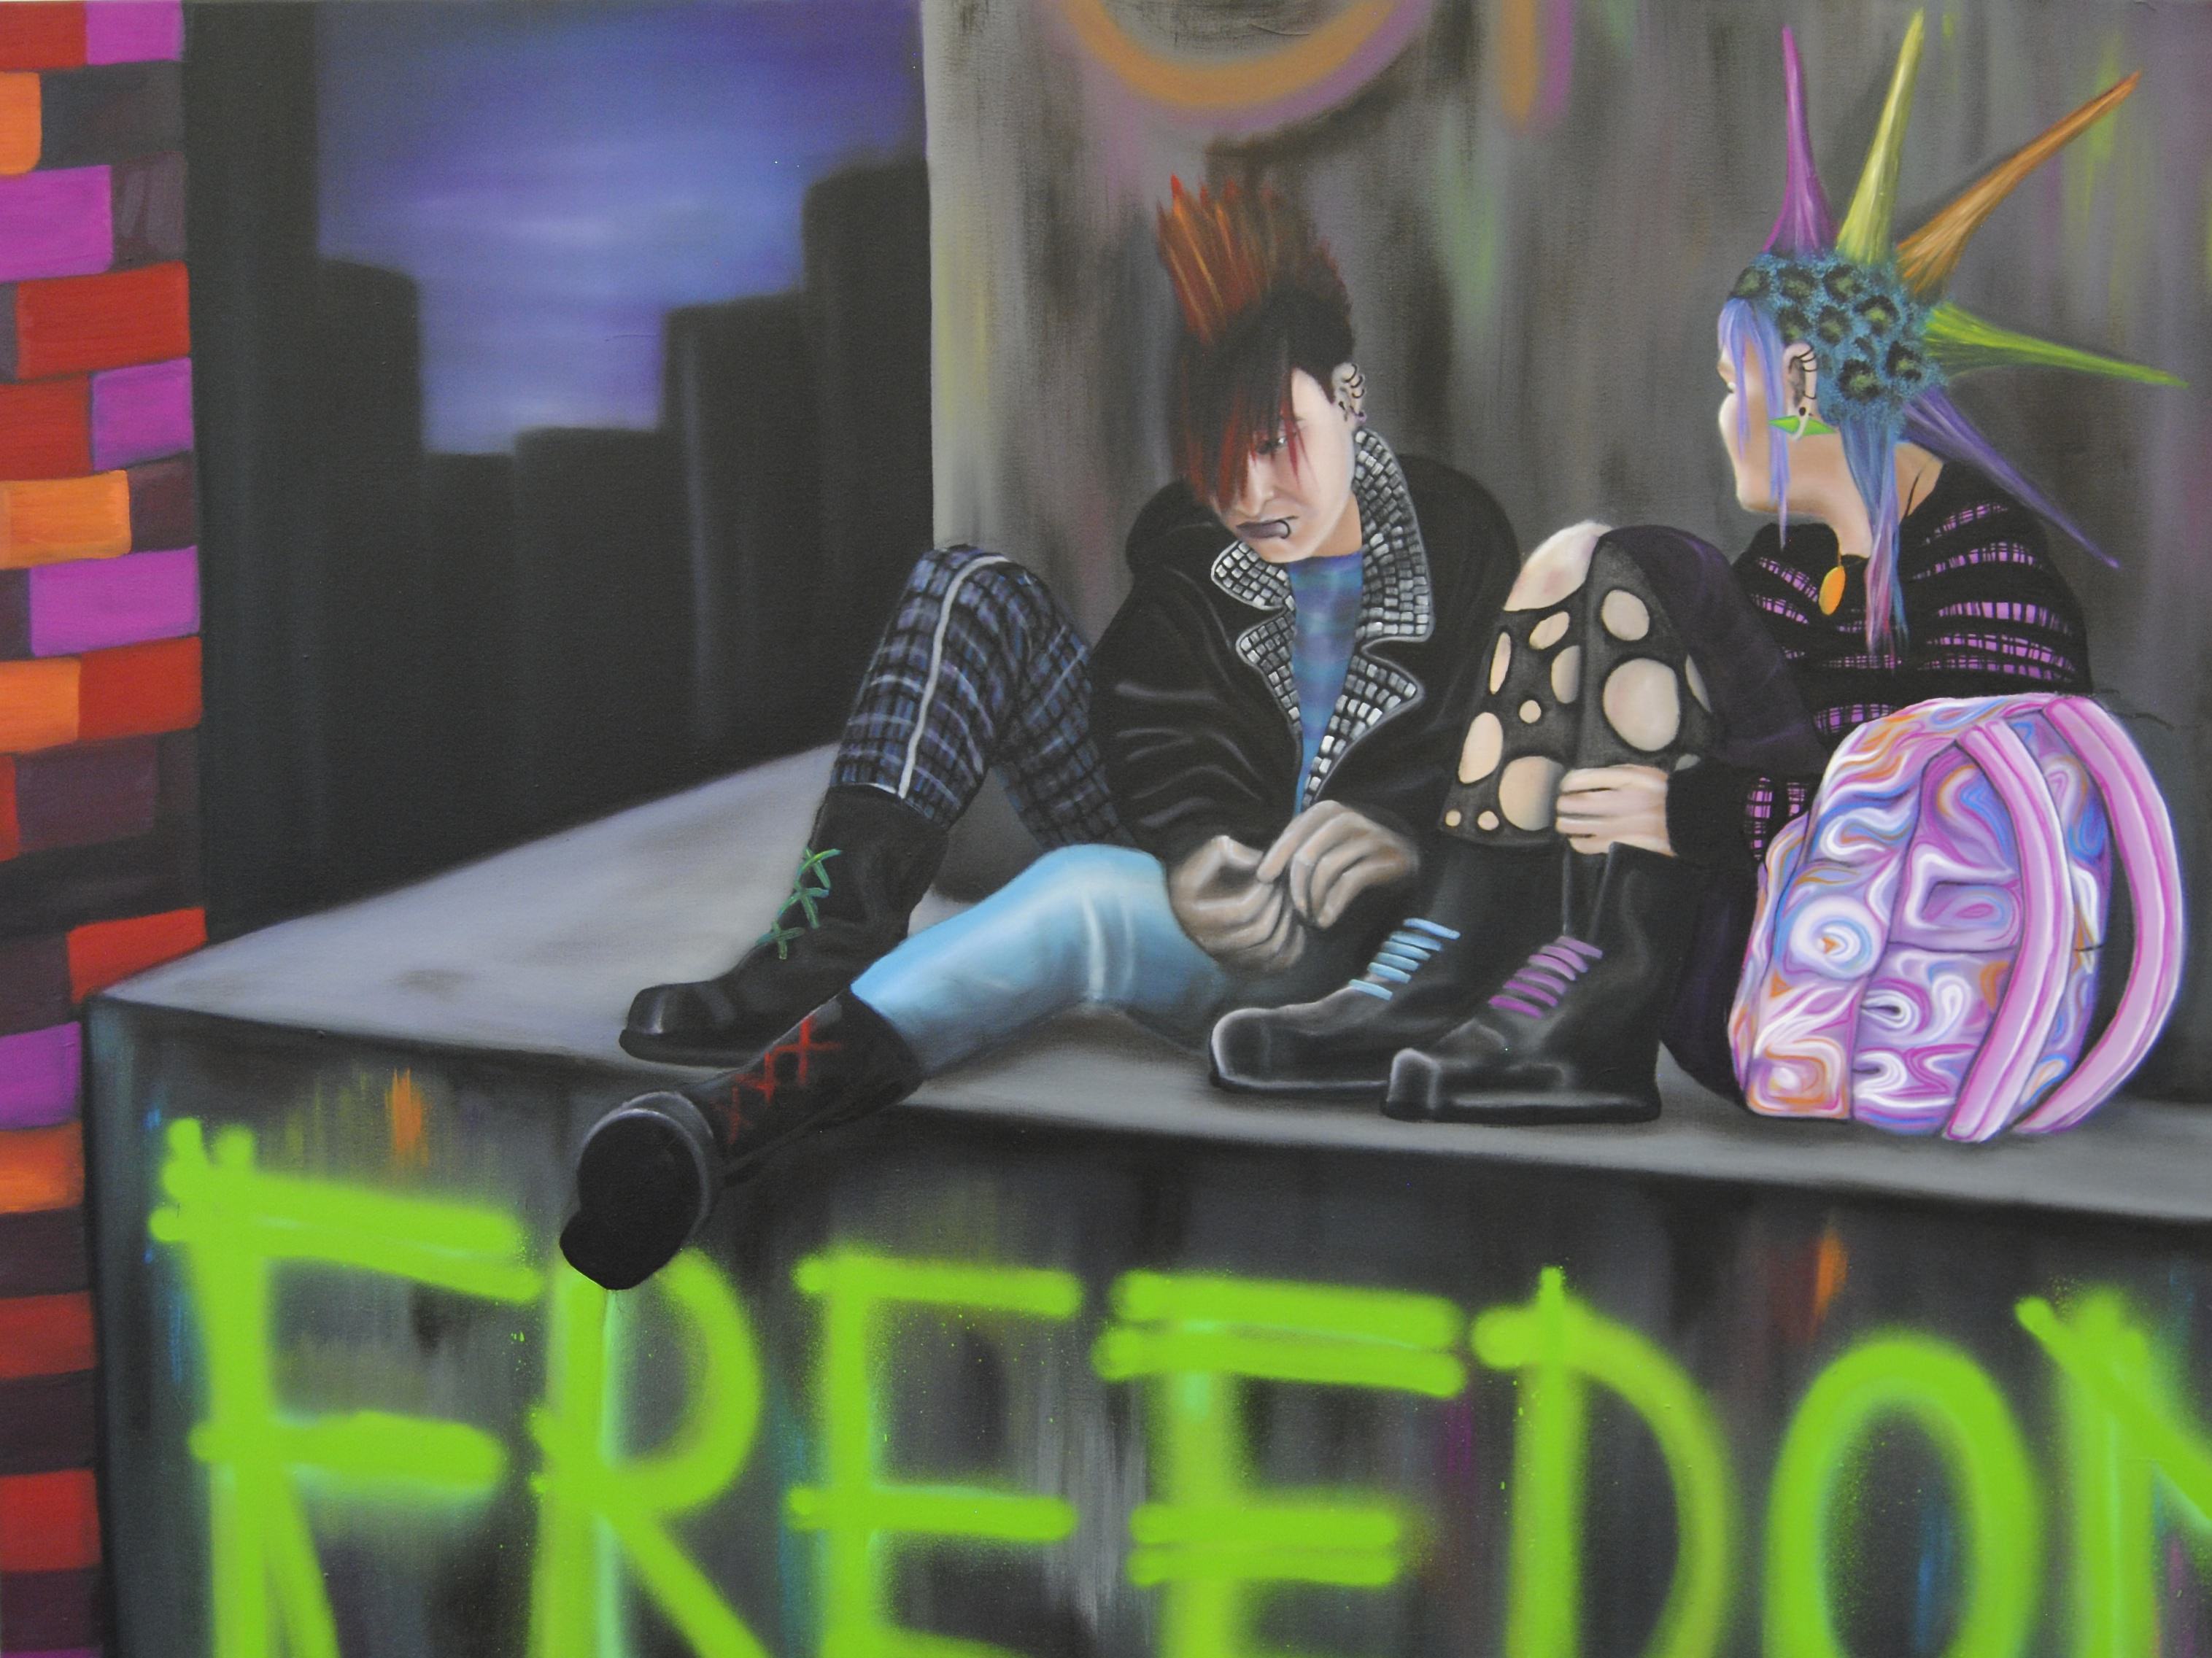 Das Ölbild auf Leinwand namens "Freedom" von Magdalena Heller aus 2017.